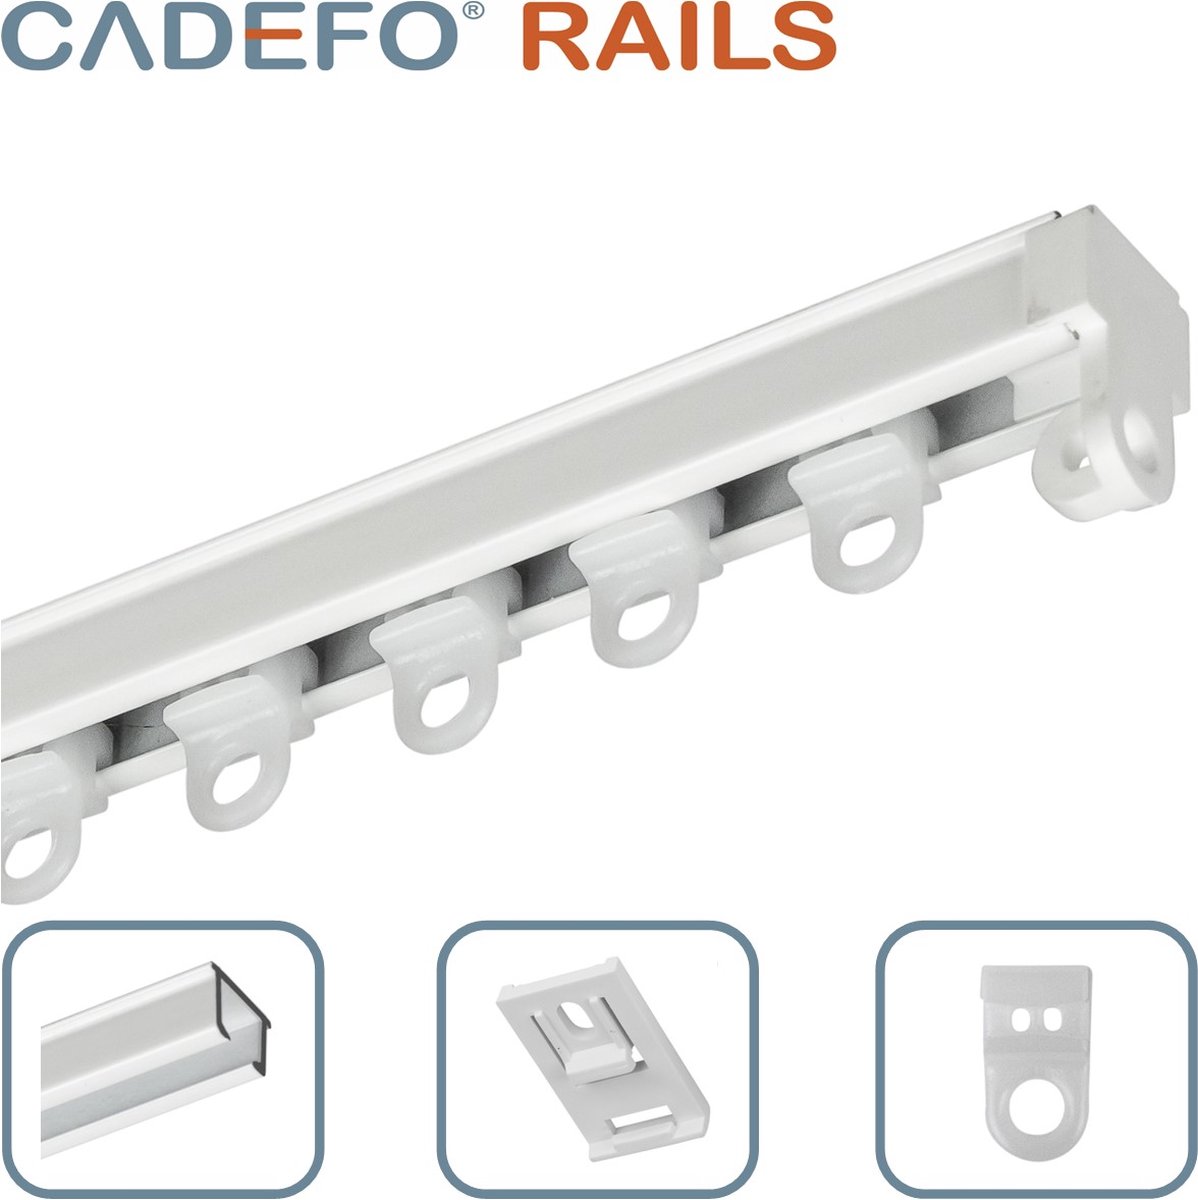 CADEFO RAILS (151 - 200 cm) Gordijnrails - Compleet op maat! - UIT 1 STUK - Leverbaar tot 6 meter - Plafondbevestiging - Lengte 161 cm